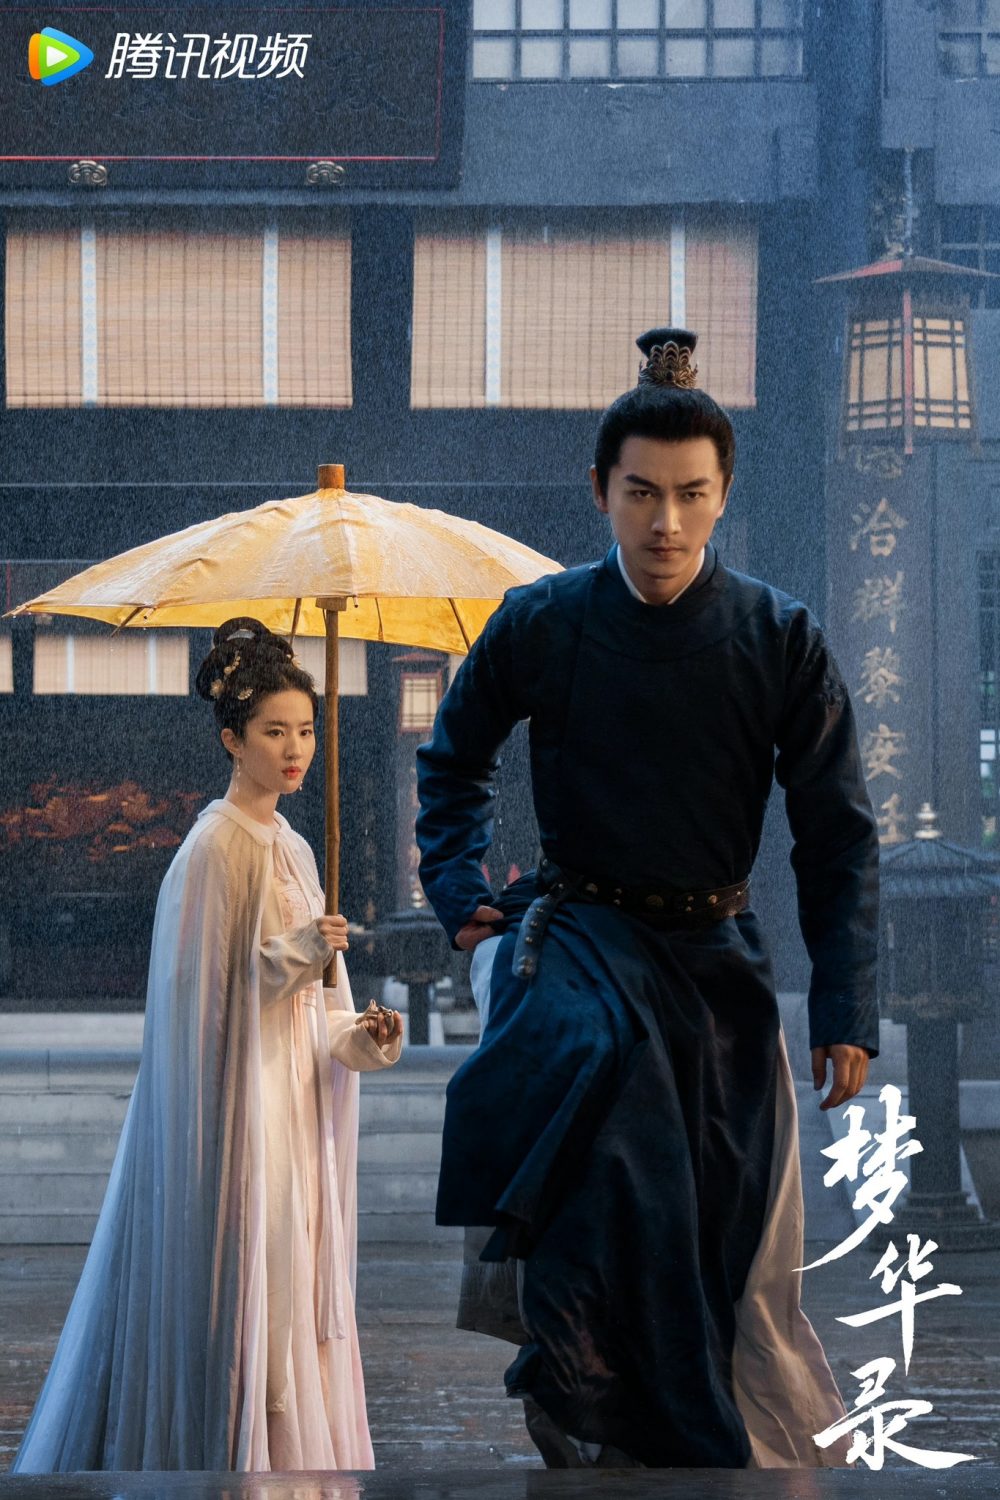 Phim mới của Lưu Diệc Phi: Mộng hoa lục - A Dream of Splendor (2022) 